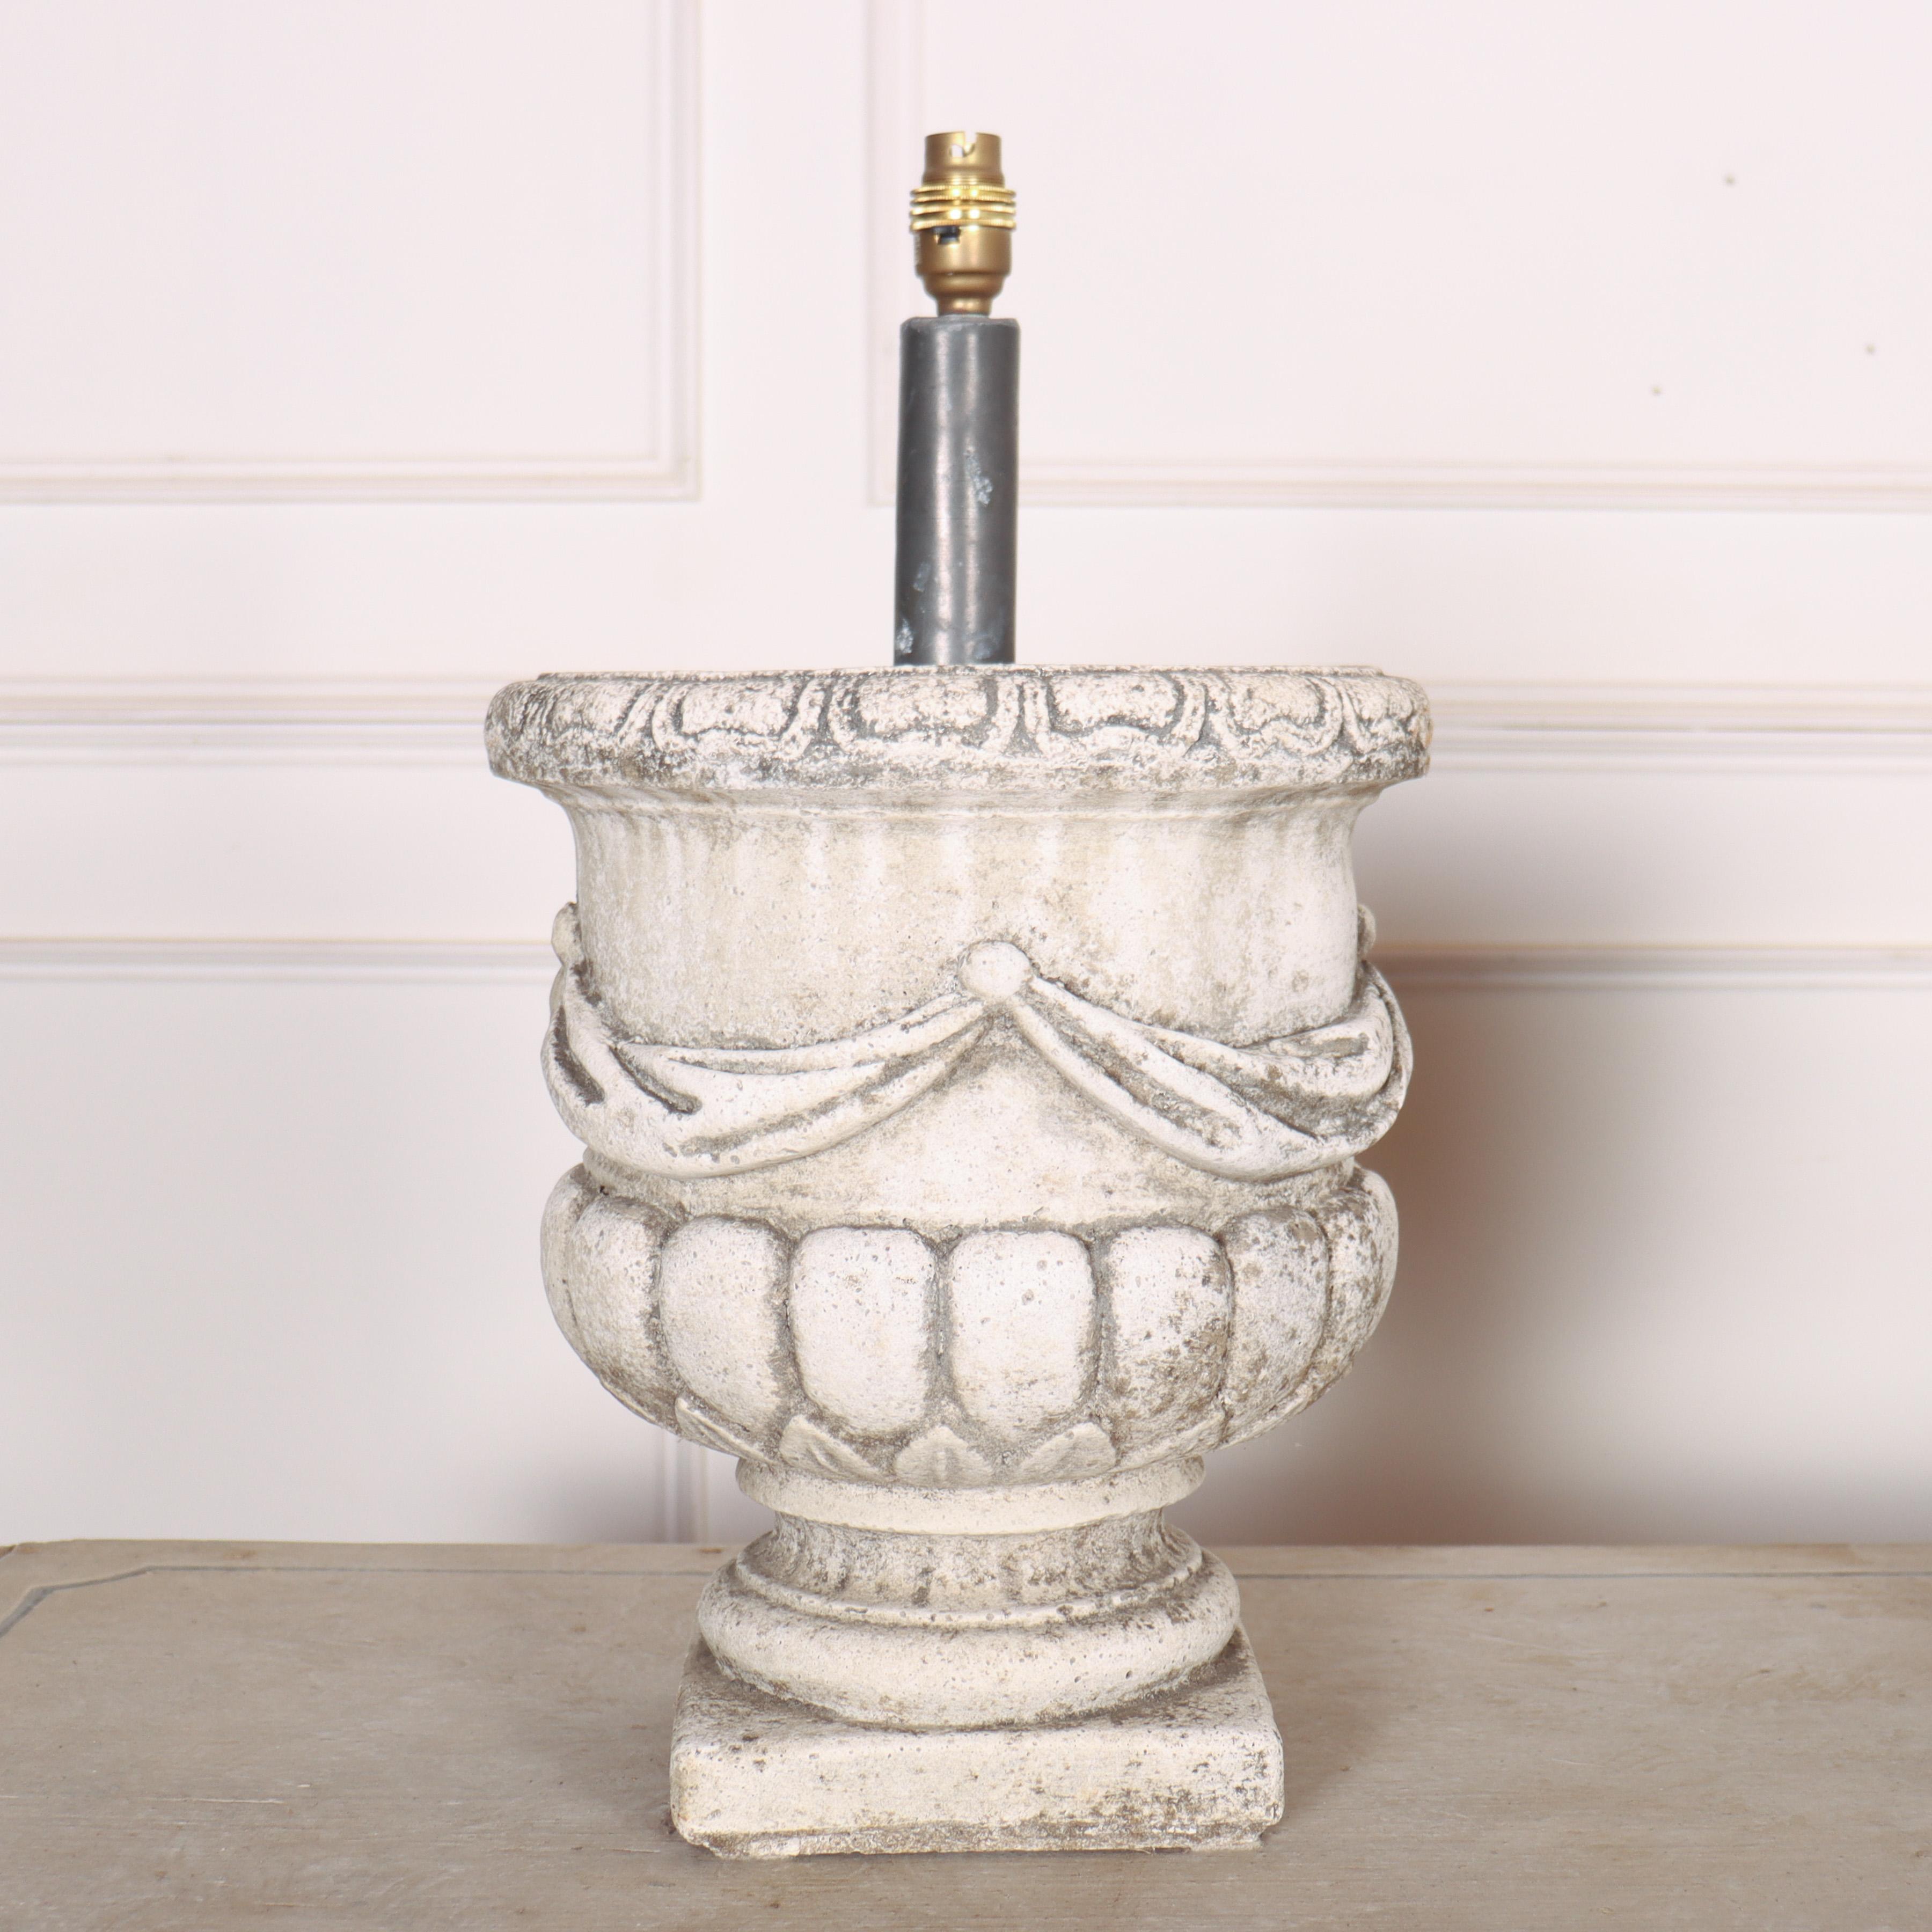 Paire de lampes de table en pierre reconstituée des années 1920.

Référence : 8075

Dimensions
20 pouces (51 cm) de haut
12 pouces (30 cm) de diamètre